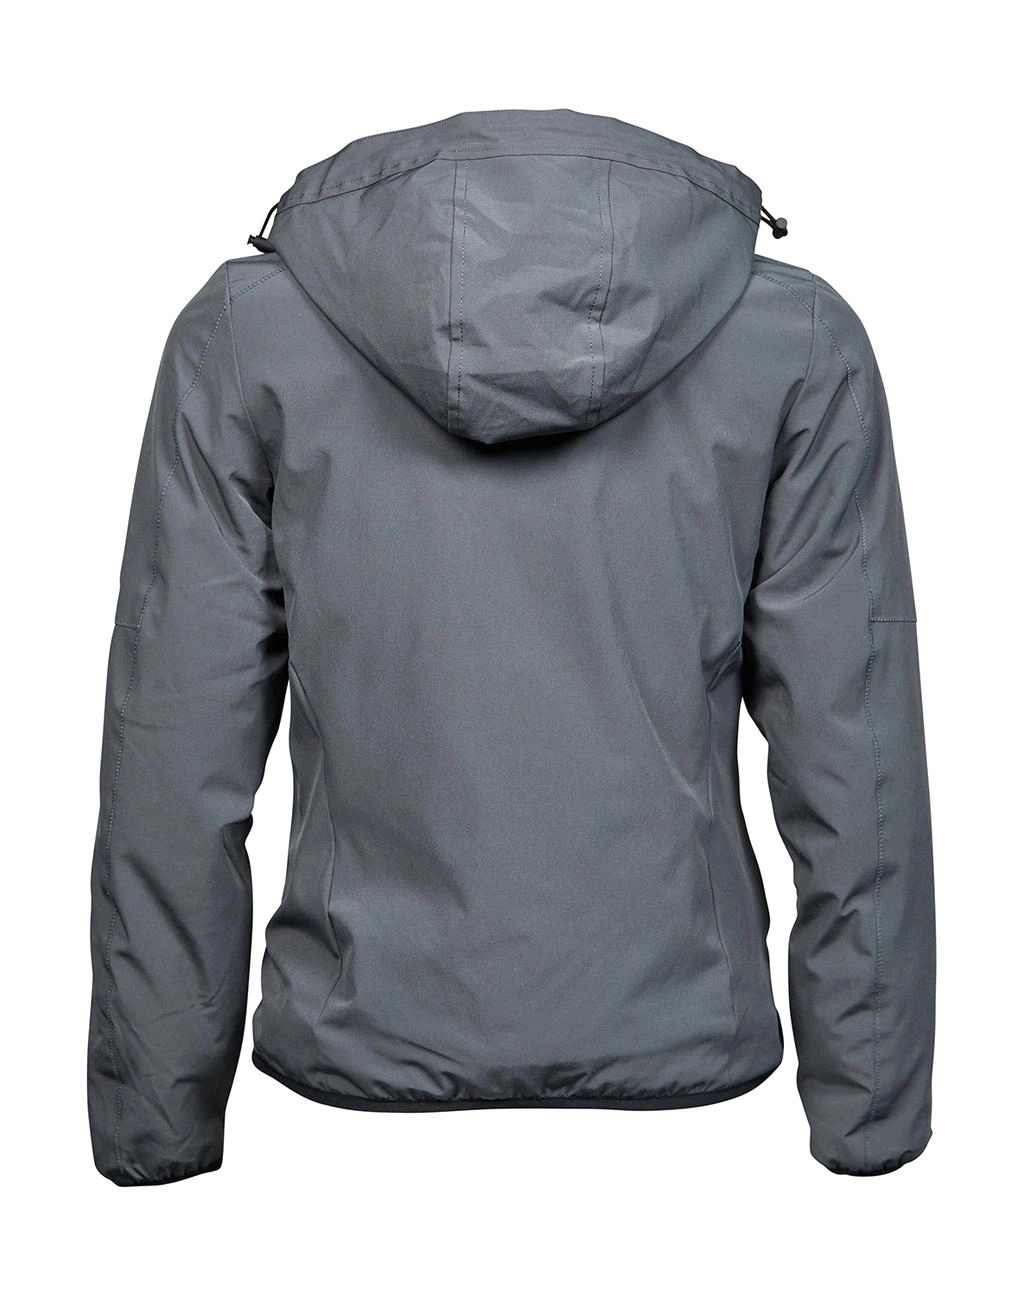 Ladies` Urban Adventure Jacket zum Besticken und Bedrucken in der Farbe Space Grey mit Ihren Logo, Schriftzug oder Motiv.